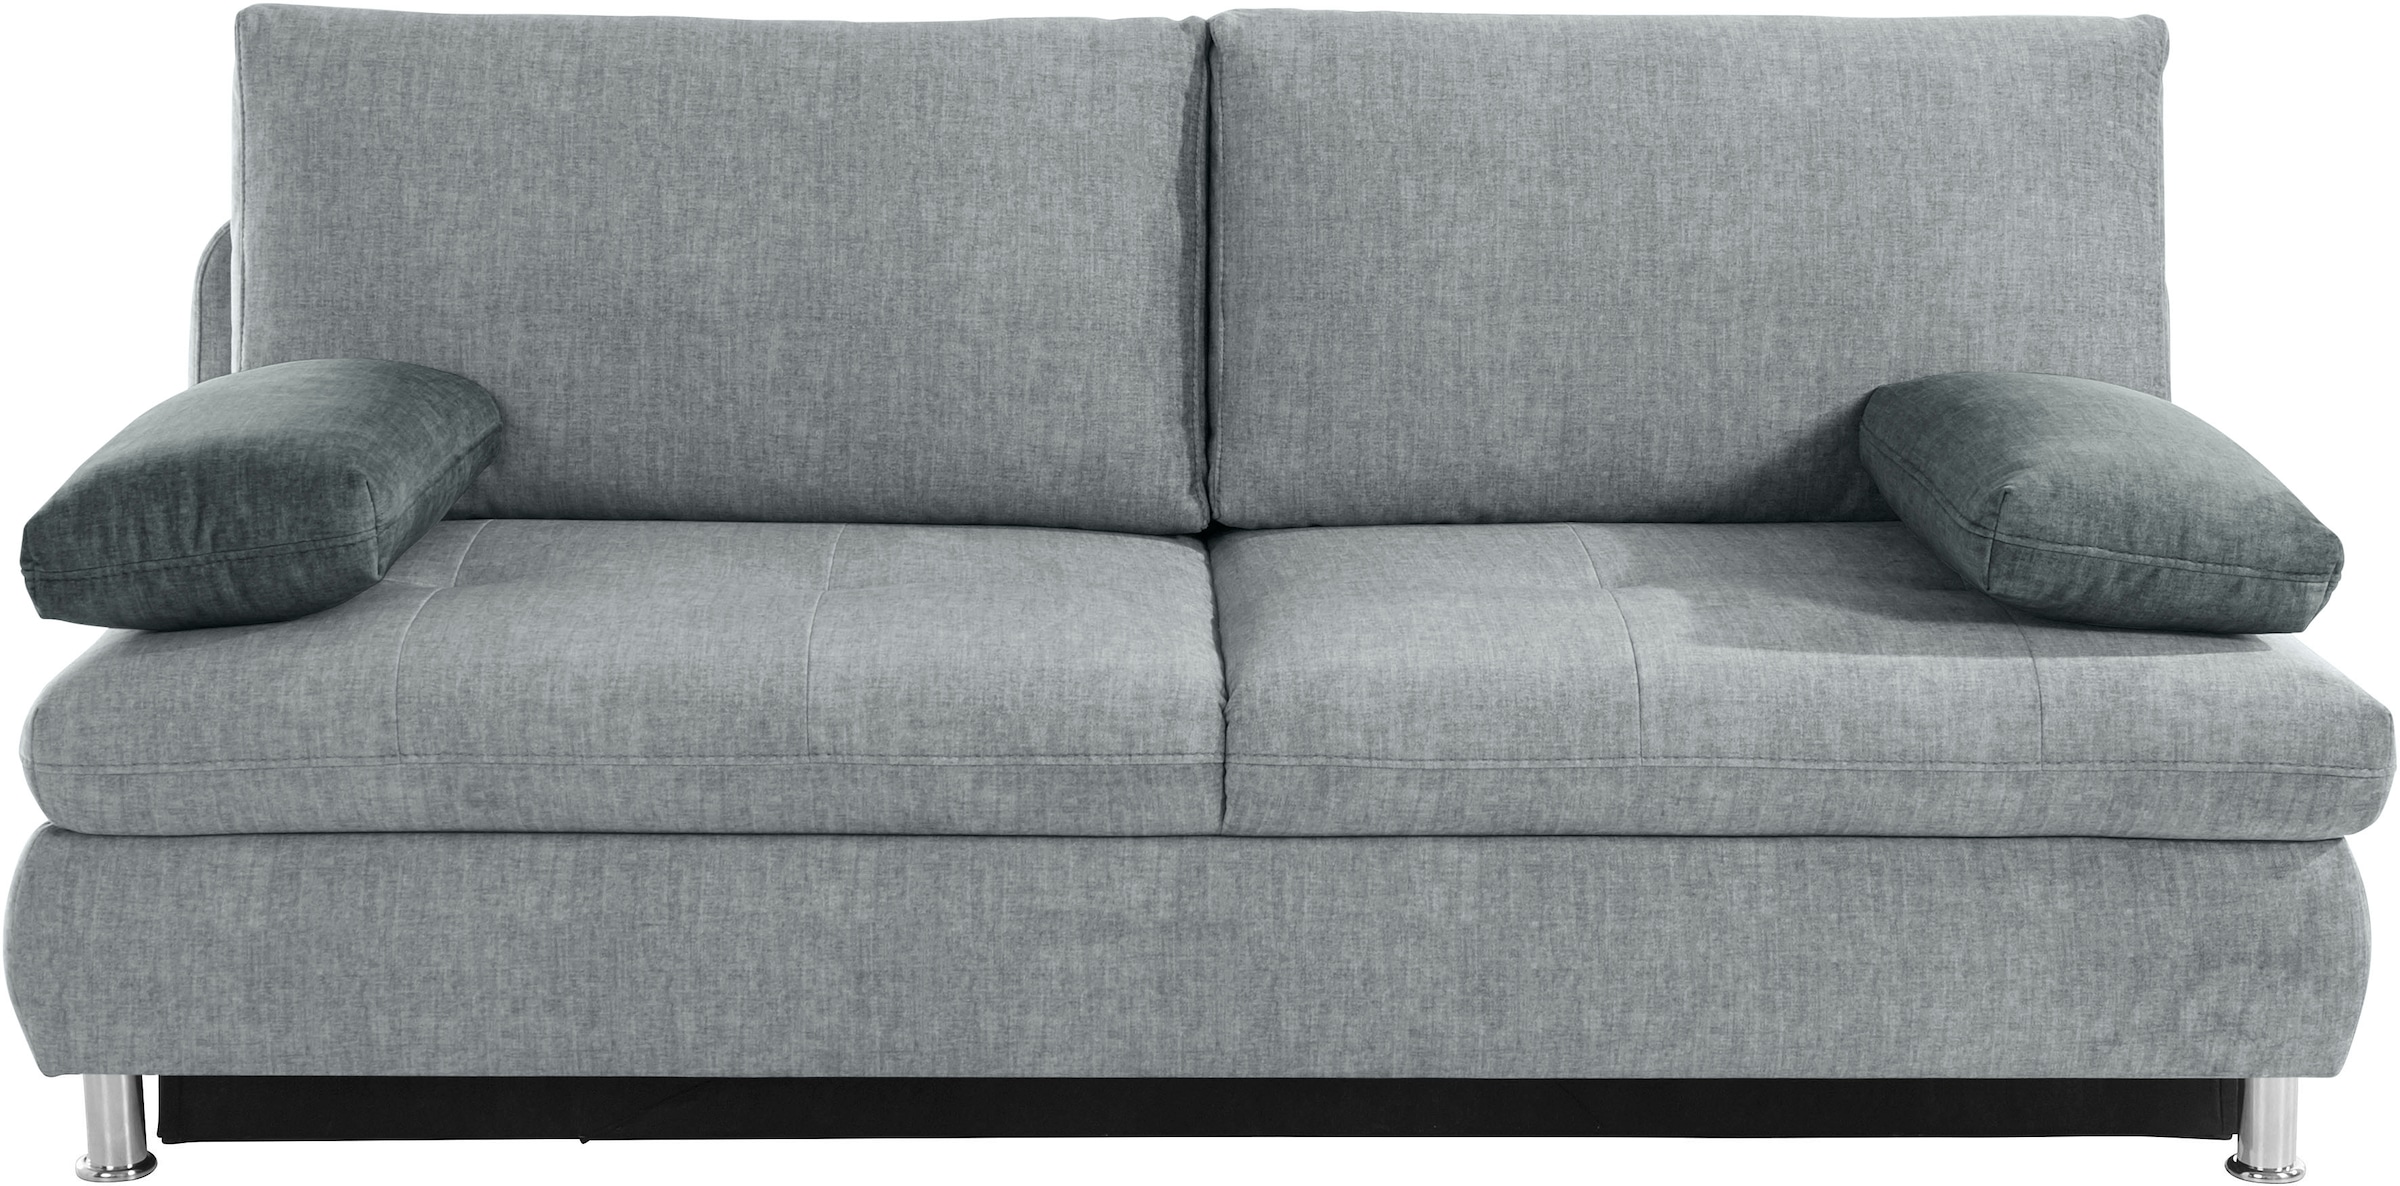 Kaltschaum wahlweise Mr. kaufen Schlafsofa mit online Couch oder »Zermatt«, Belastung/Sitz) Boxspringfederung (140kg